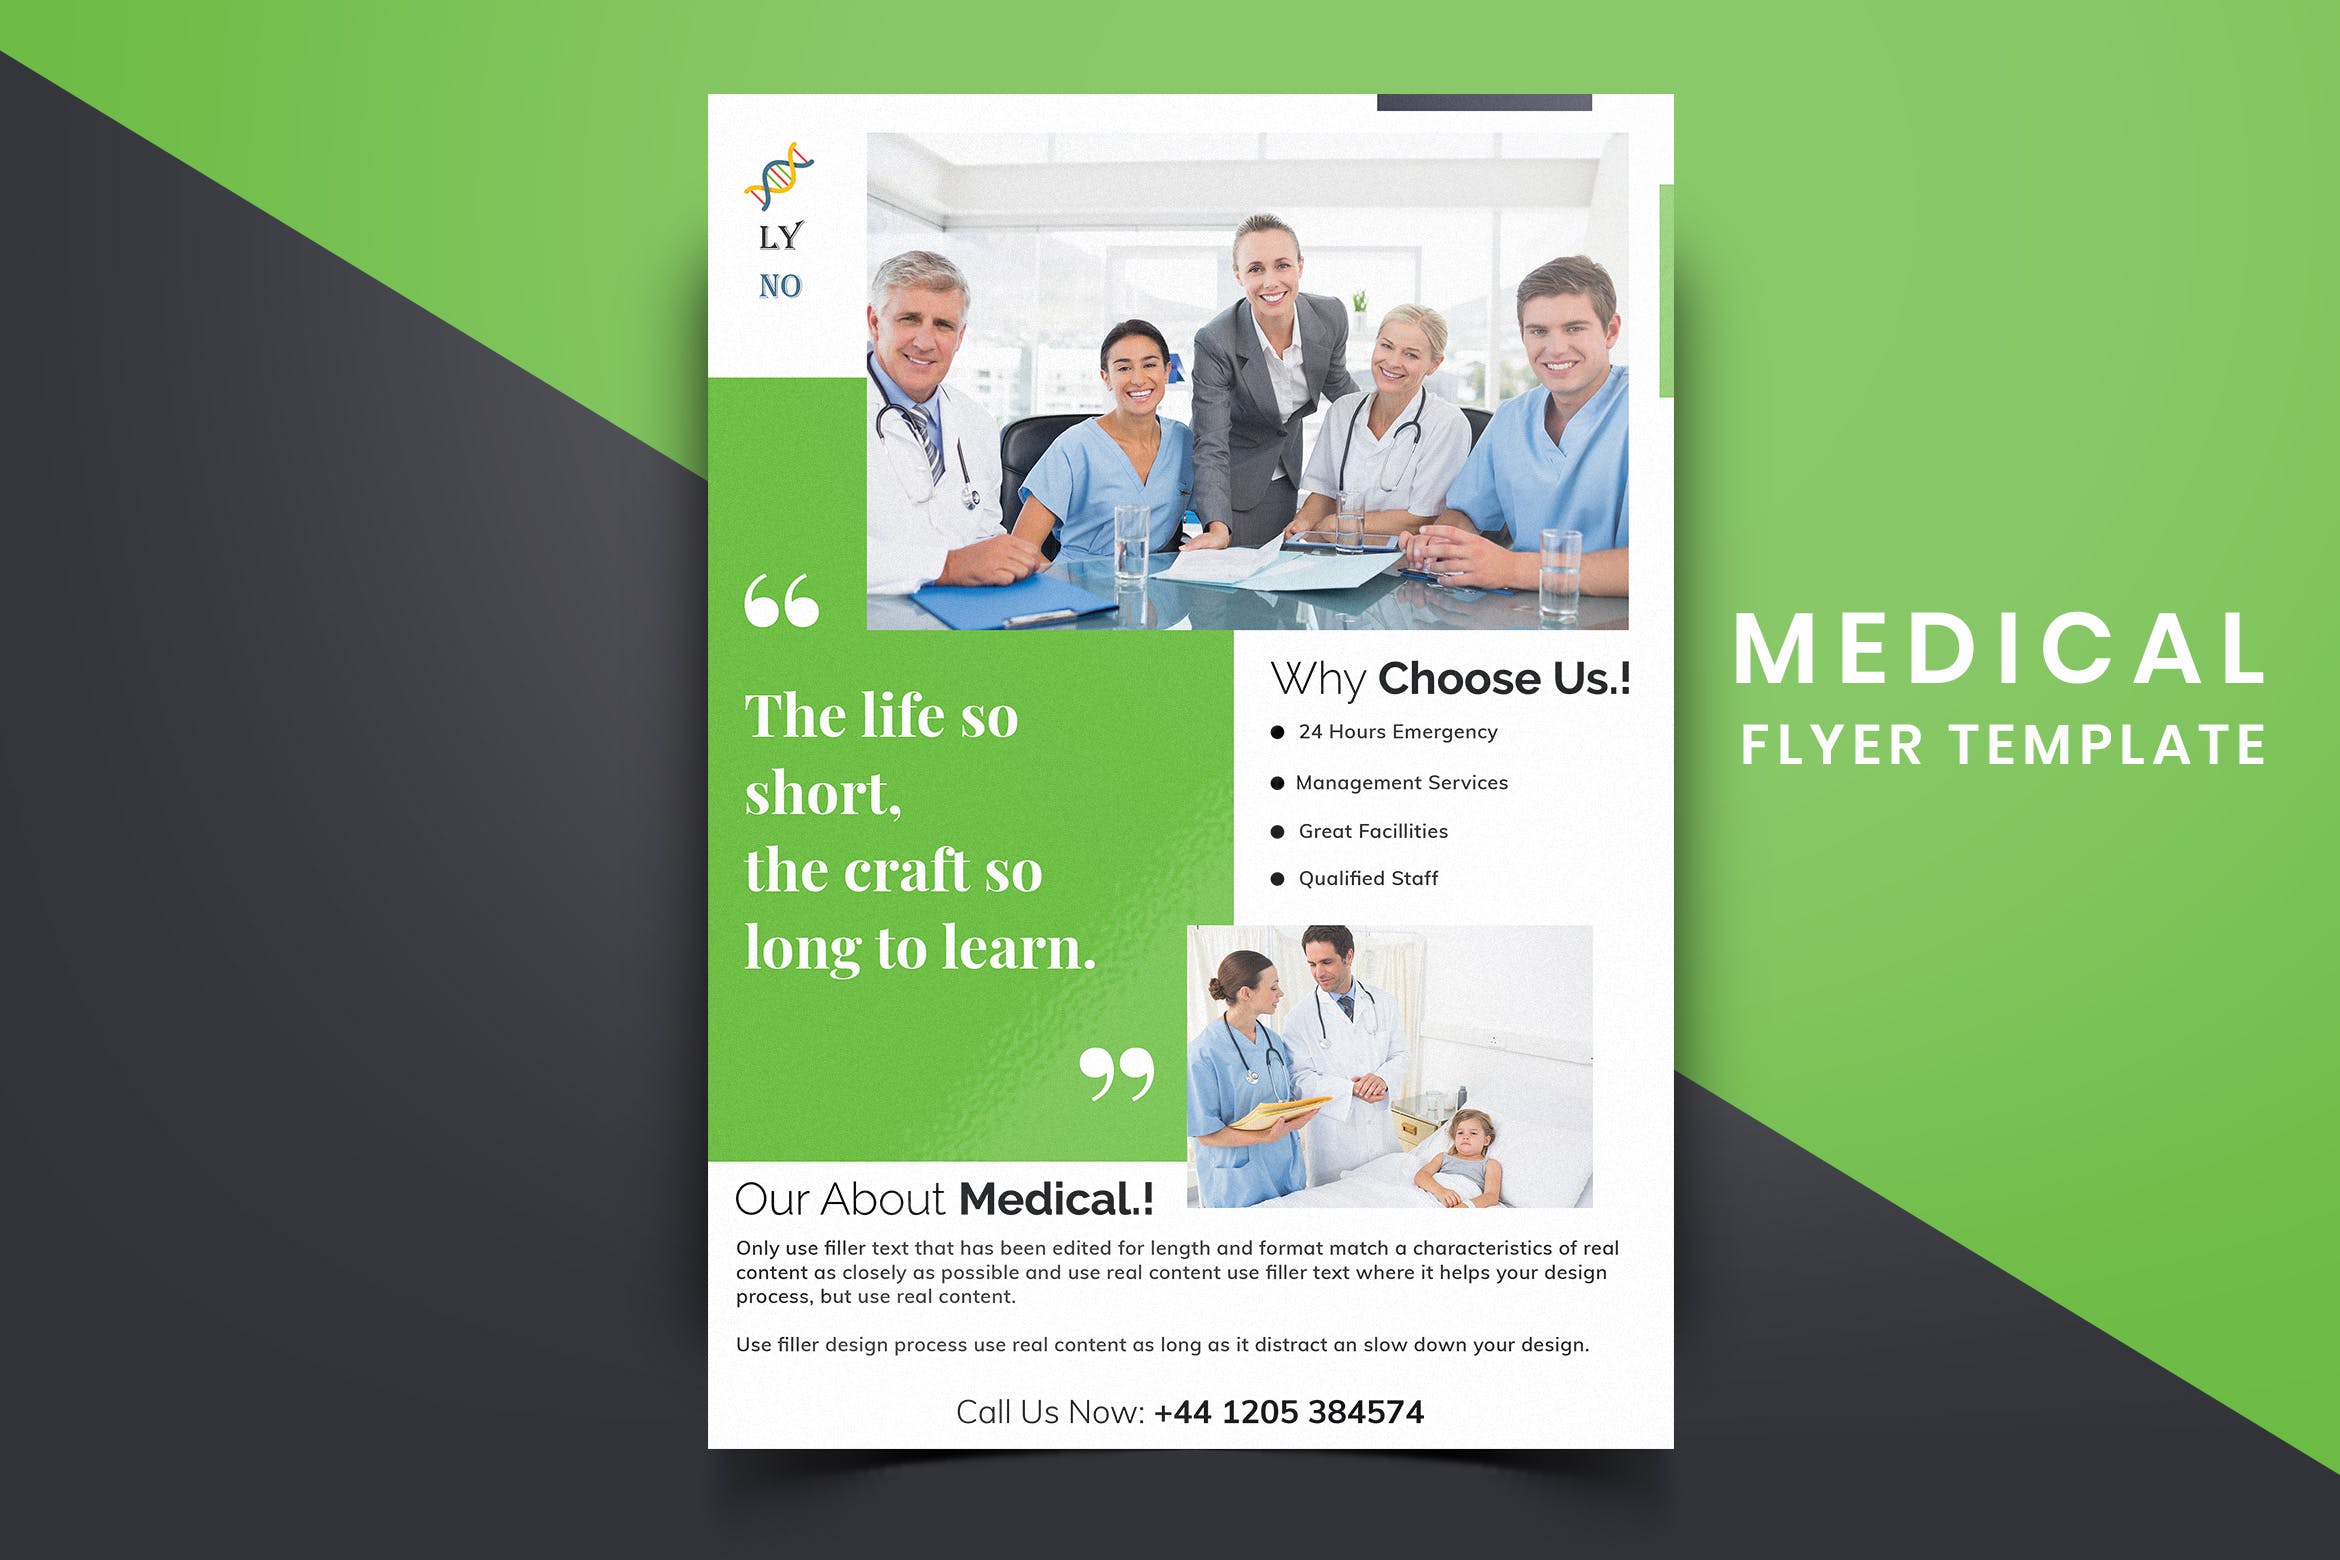 医院诊所医疗主题宣传单排版设计模板v06 Medical Flyer Template-06插图